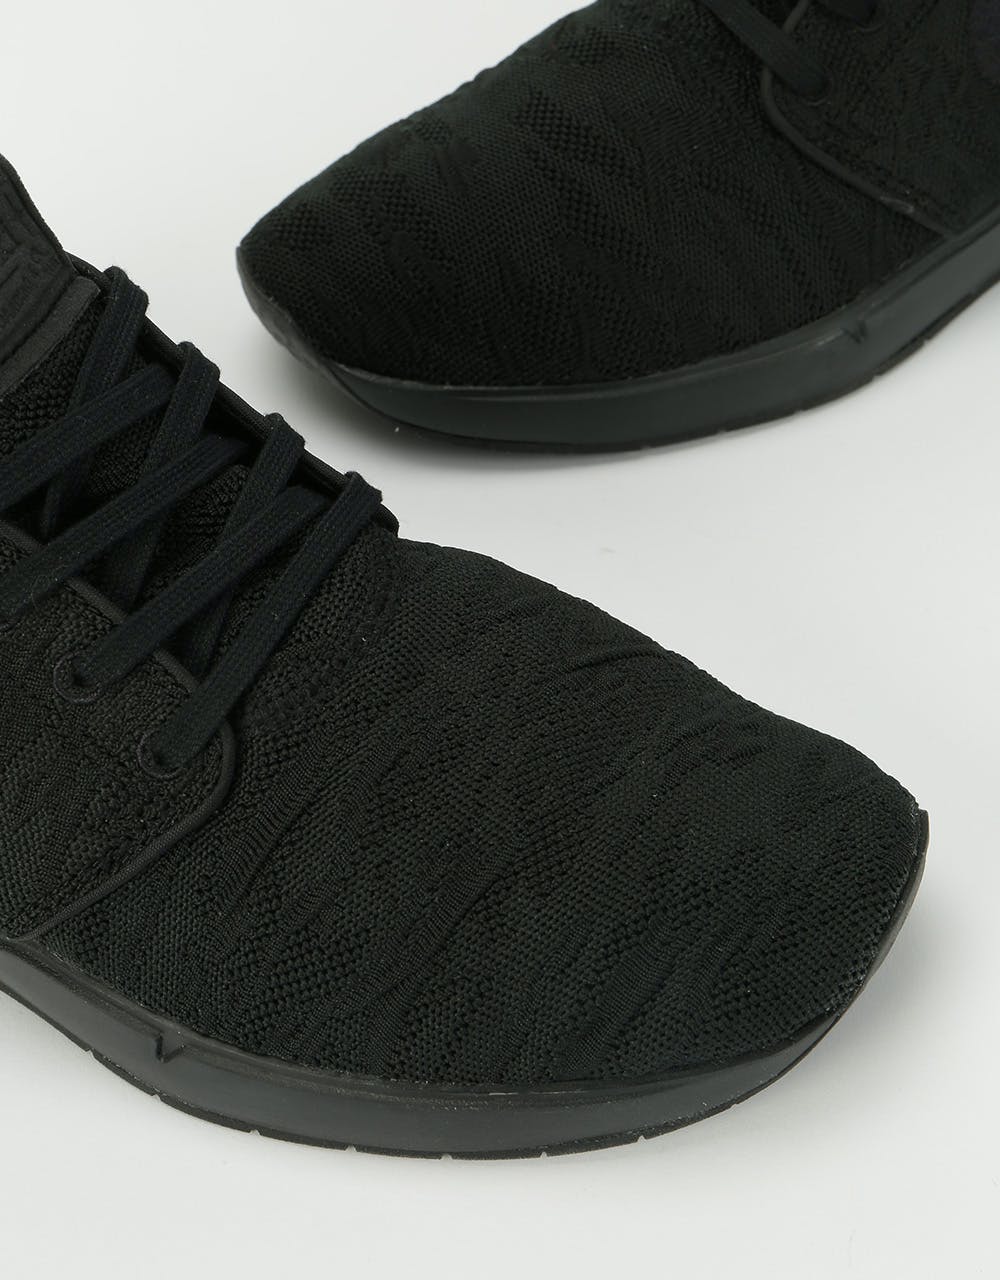 Nike SB Air Max Janoski 2 Shoes - Black/Black-Black-Black